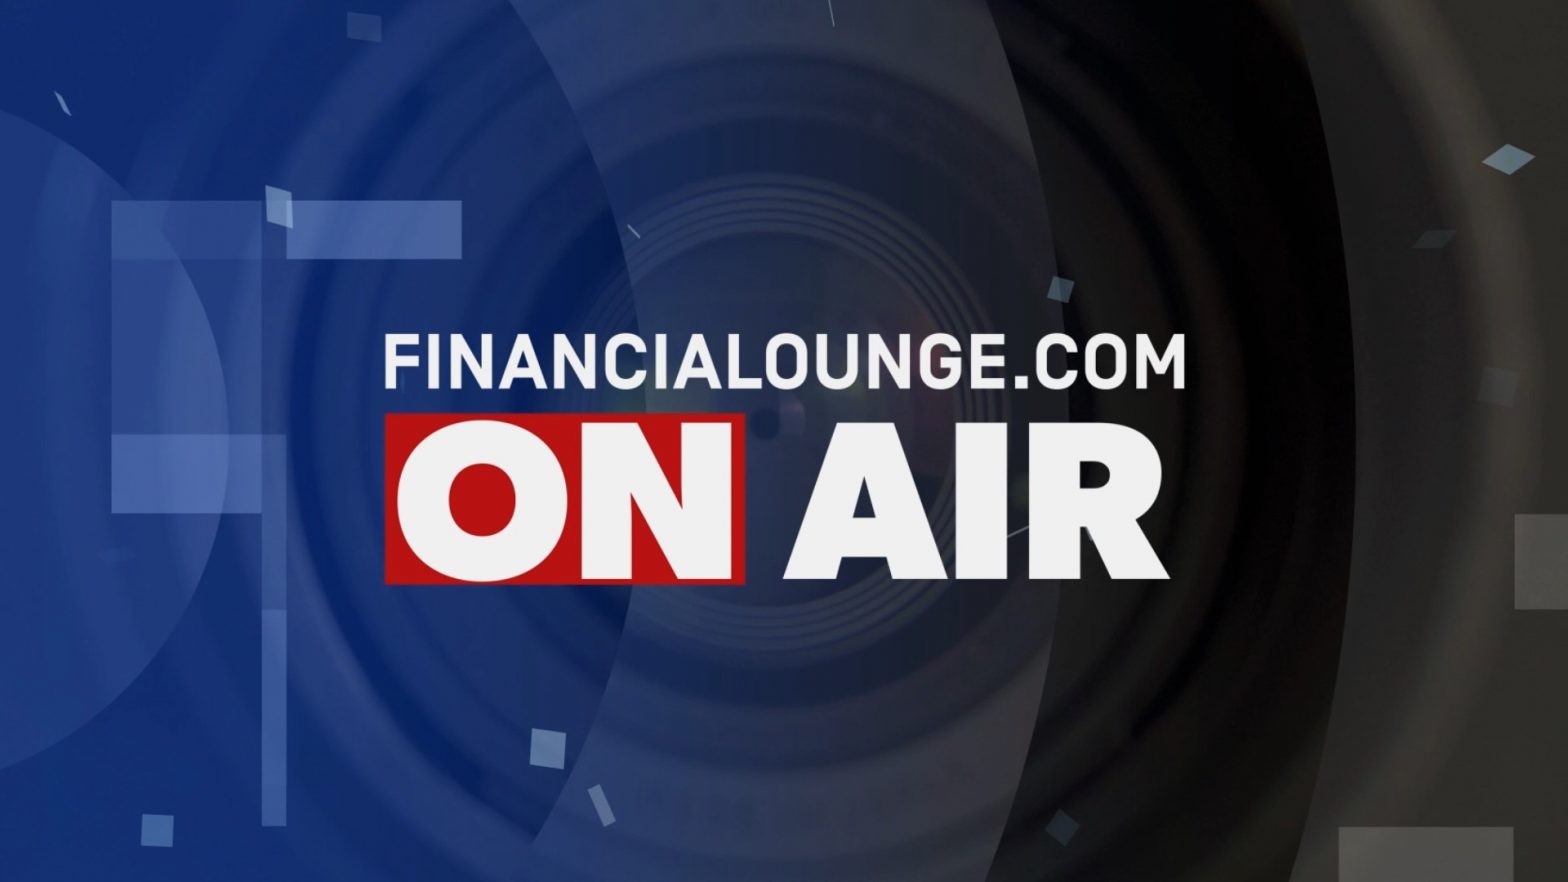 financialounge.com La cessione del 25% di Mps riapre il risiko bancario - Edizione del 21 novembre